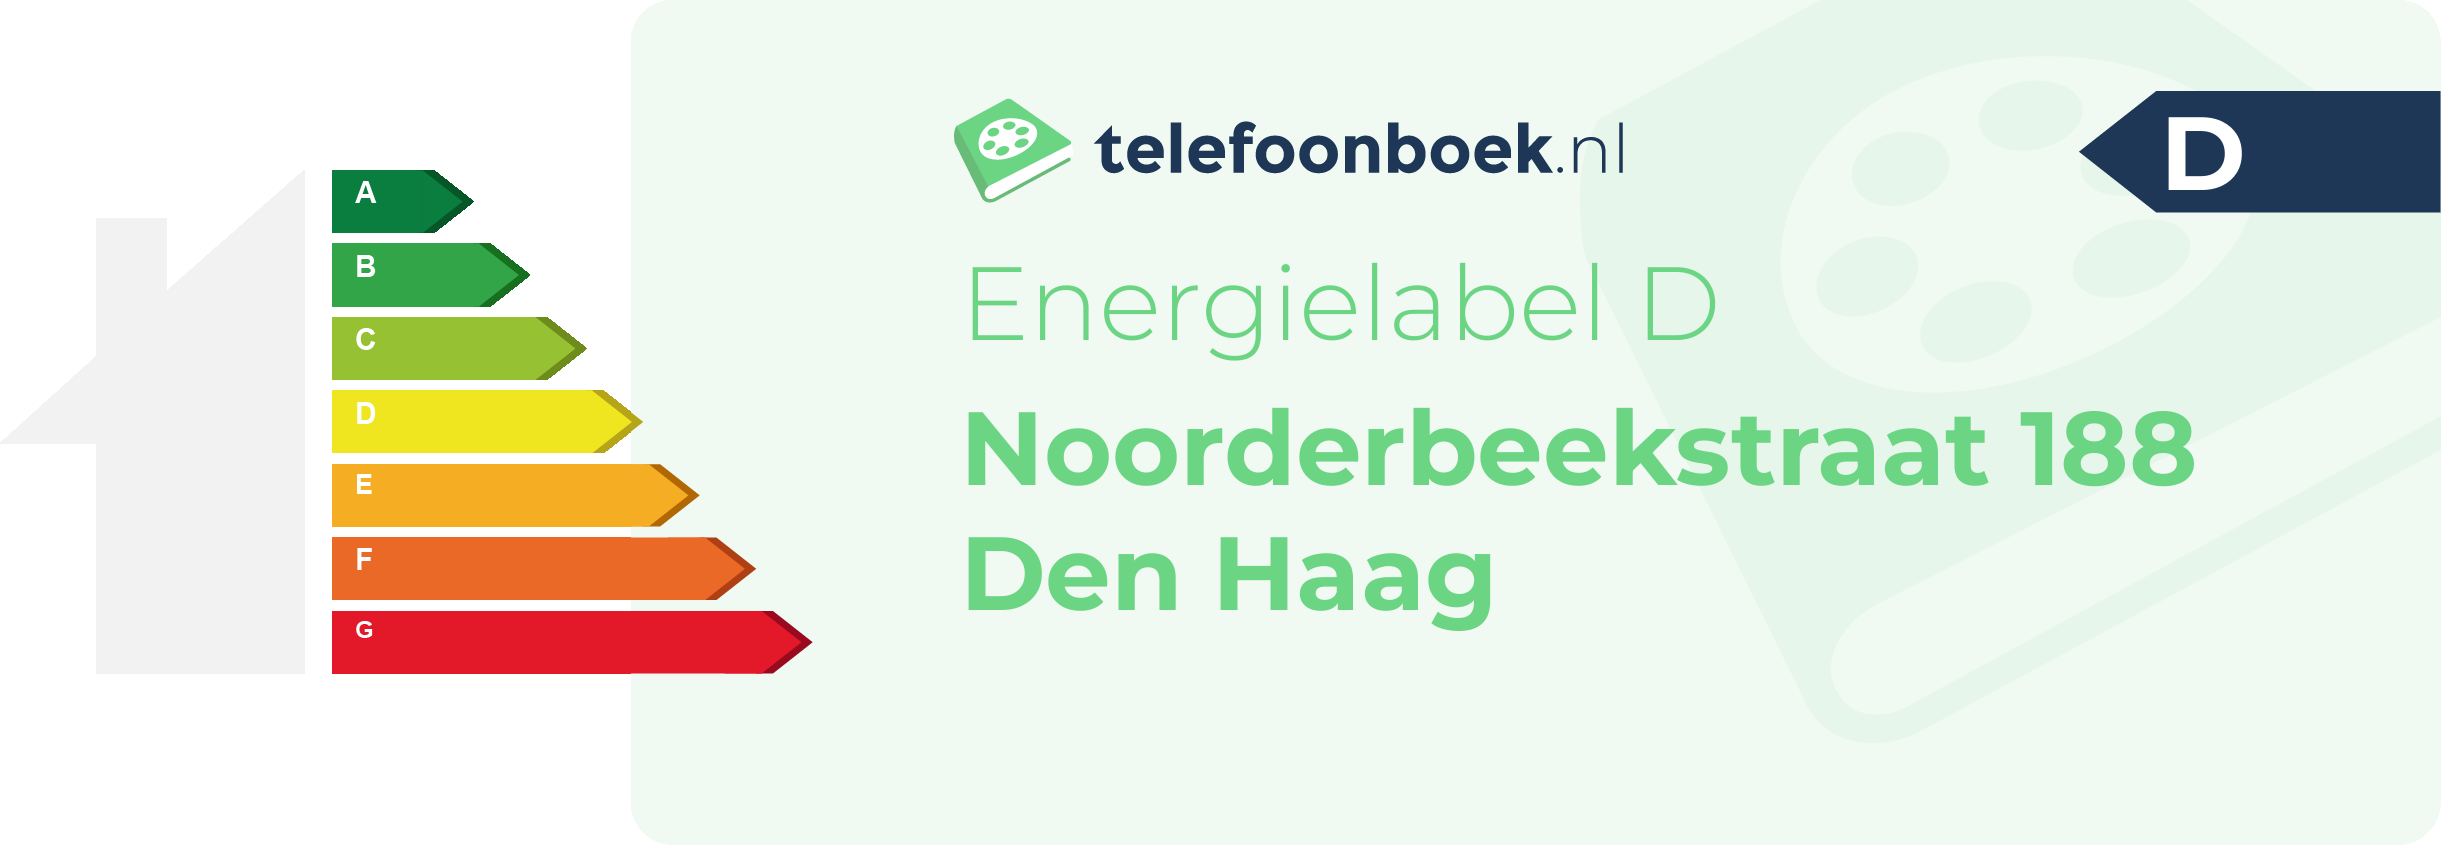 Energielabel Noorderbeekstraat 188 Den Haag